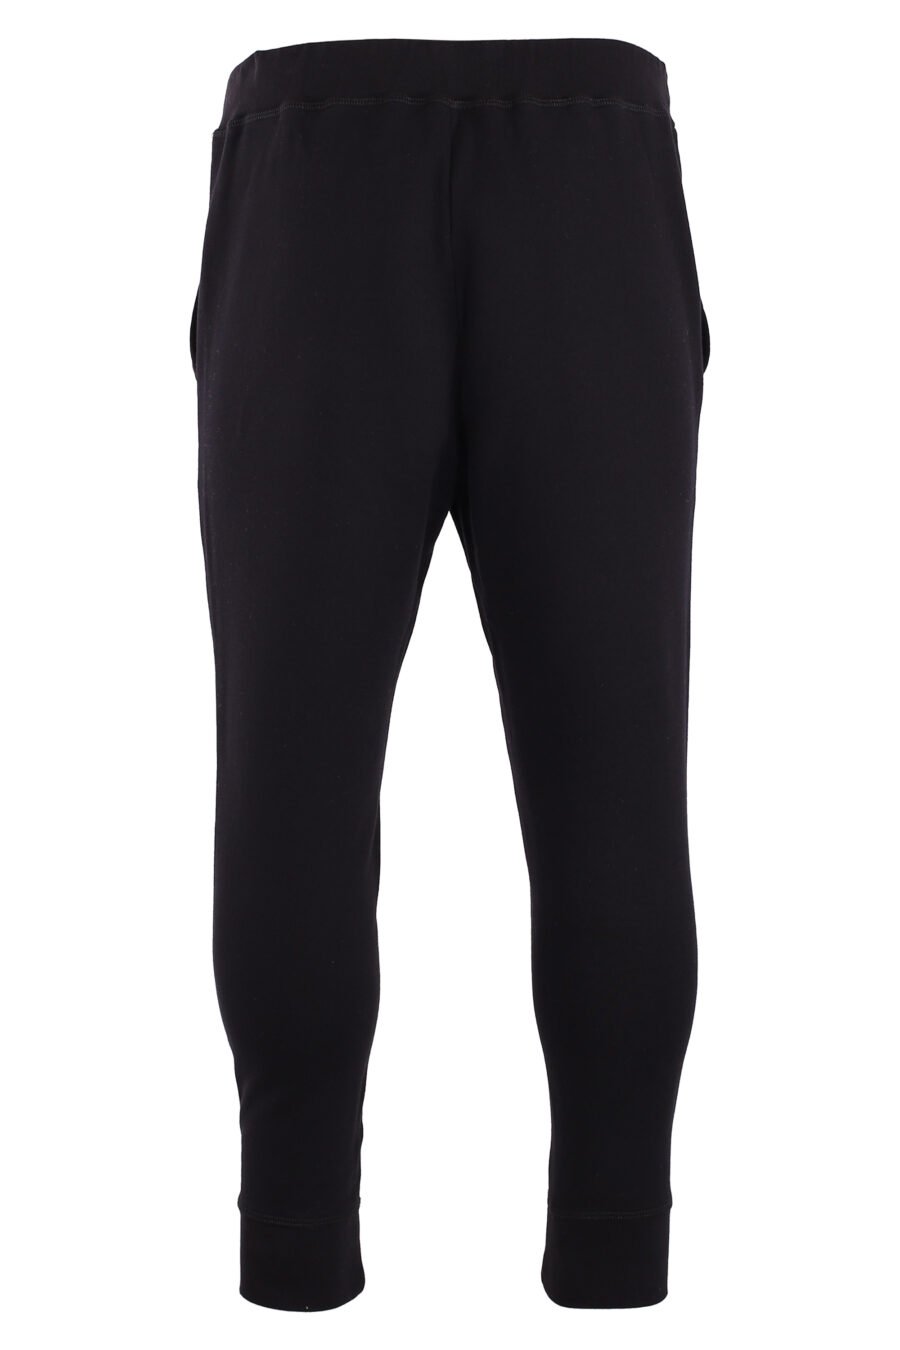 Pantalón de chándal negro "icon ski" con doble logo vertical blanco - IMG 8973